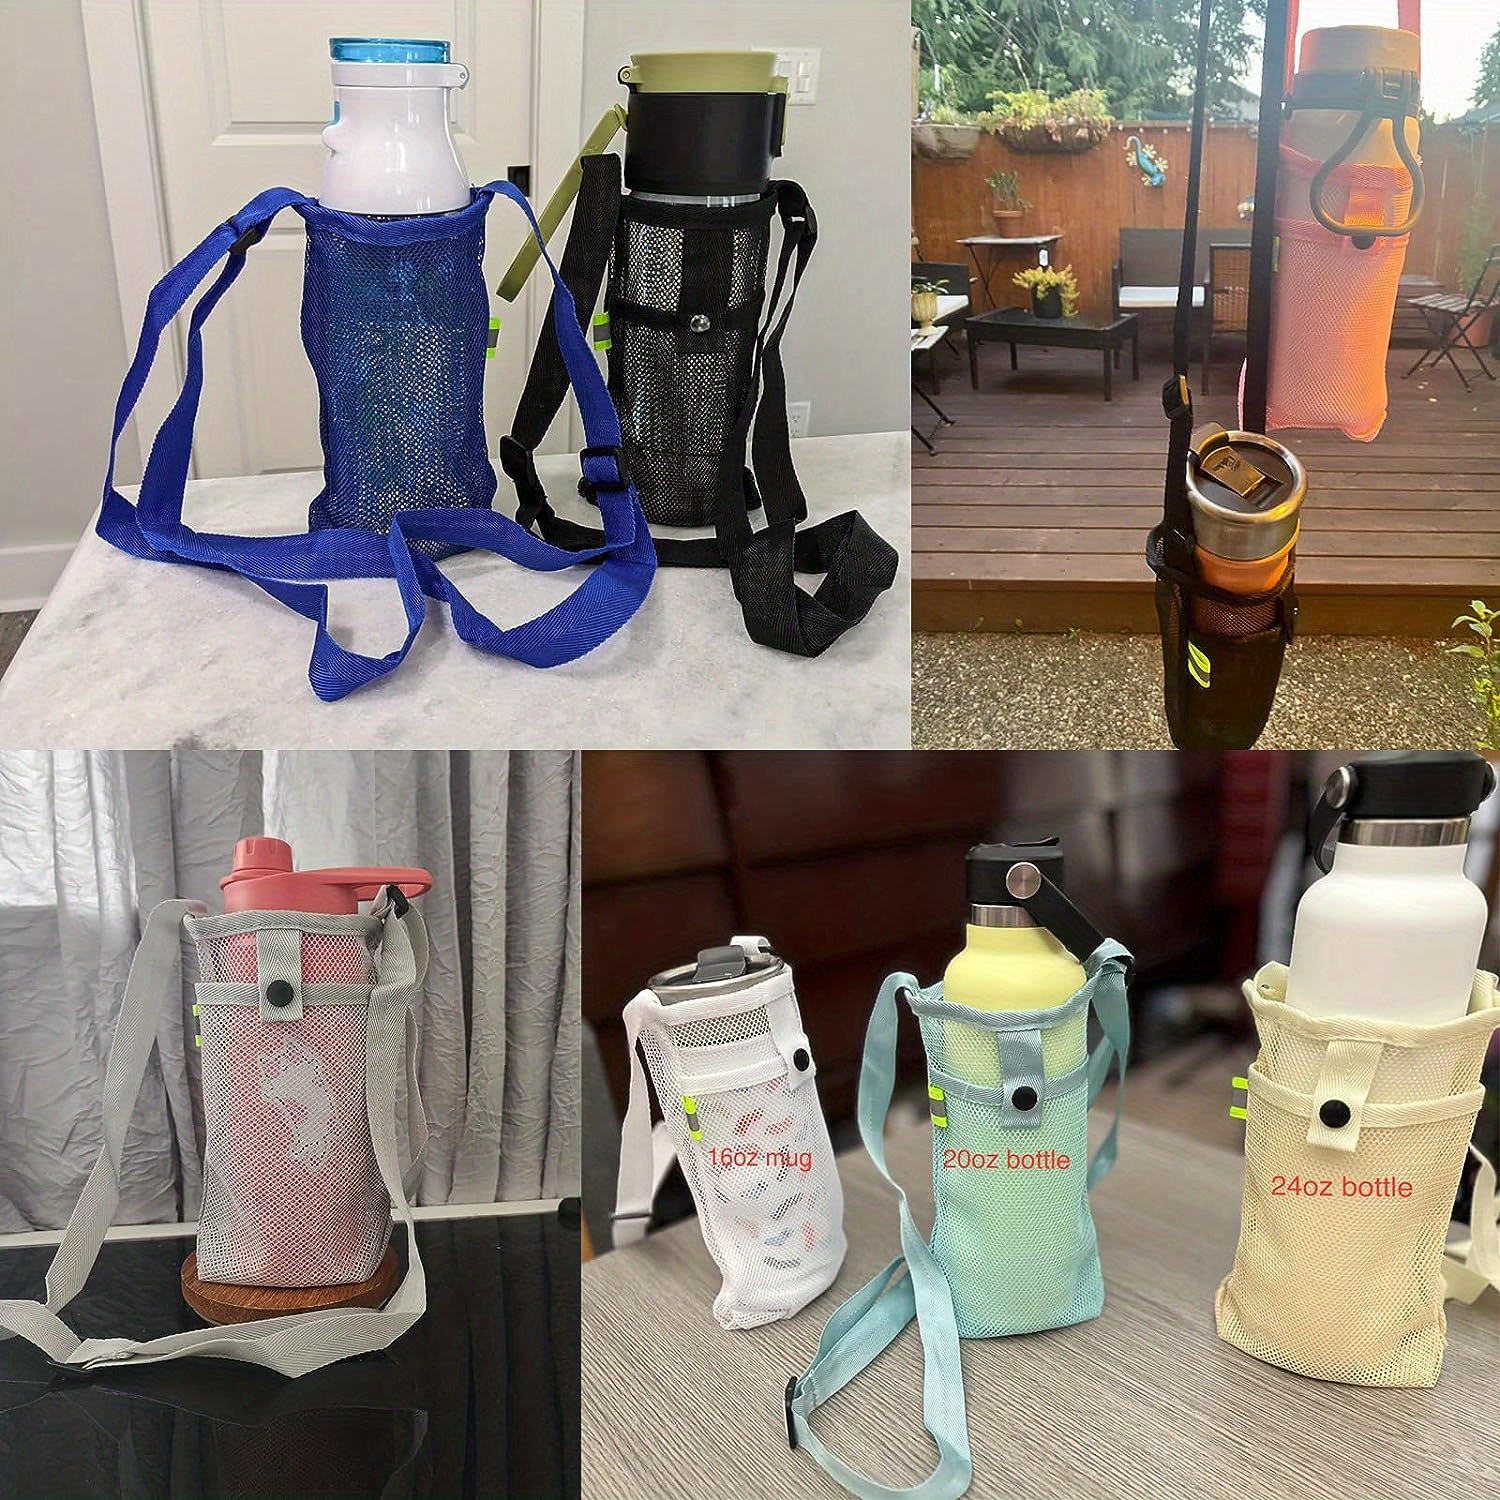 Water Bottle Holder Water Bottle Carrier with Adjustable Shoulder